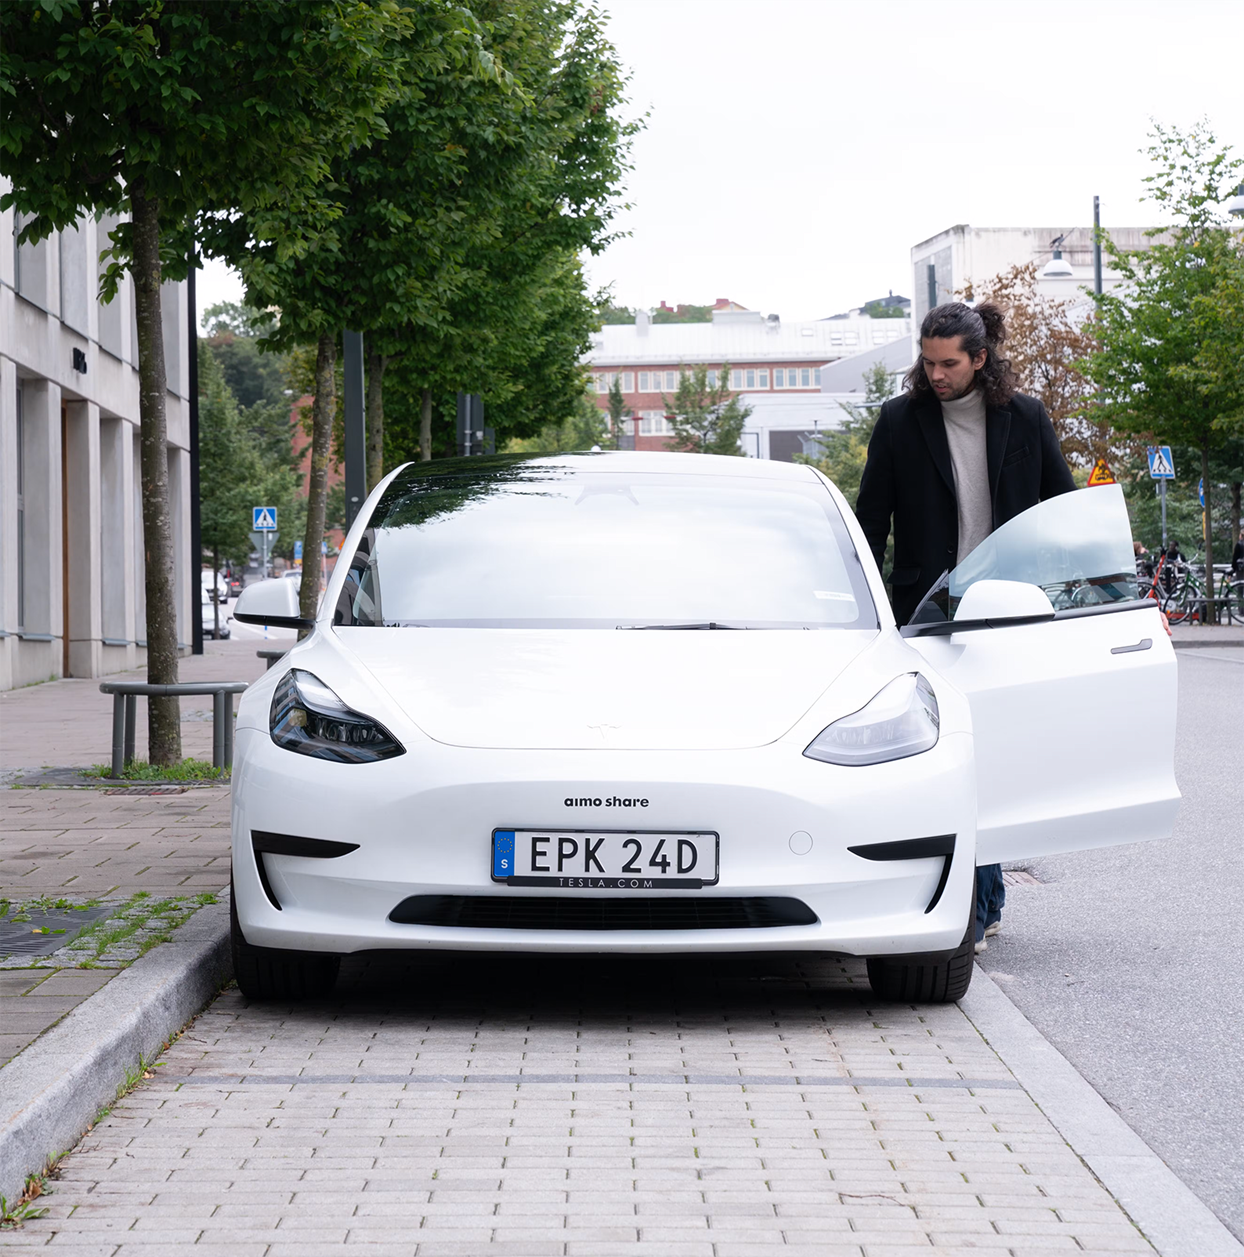 Aimo Share car sharing Tesla model 3 car